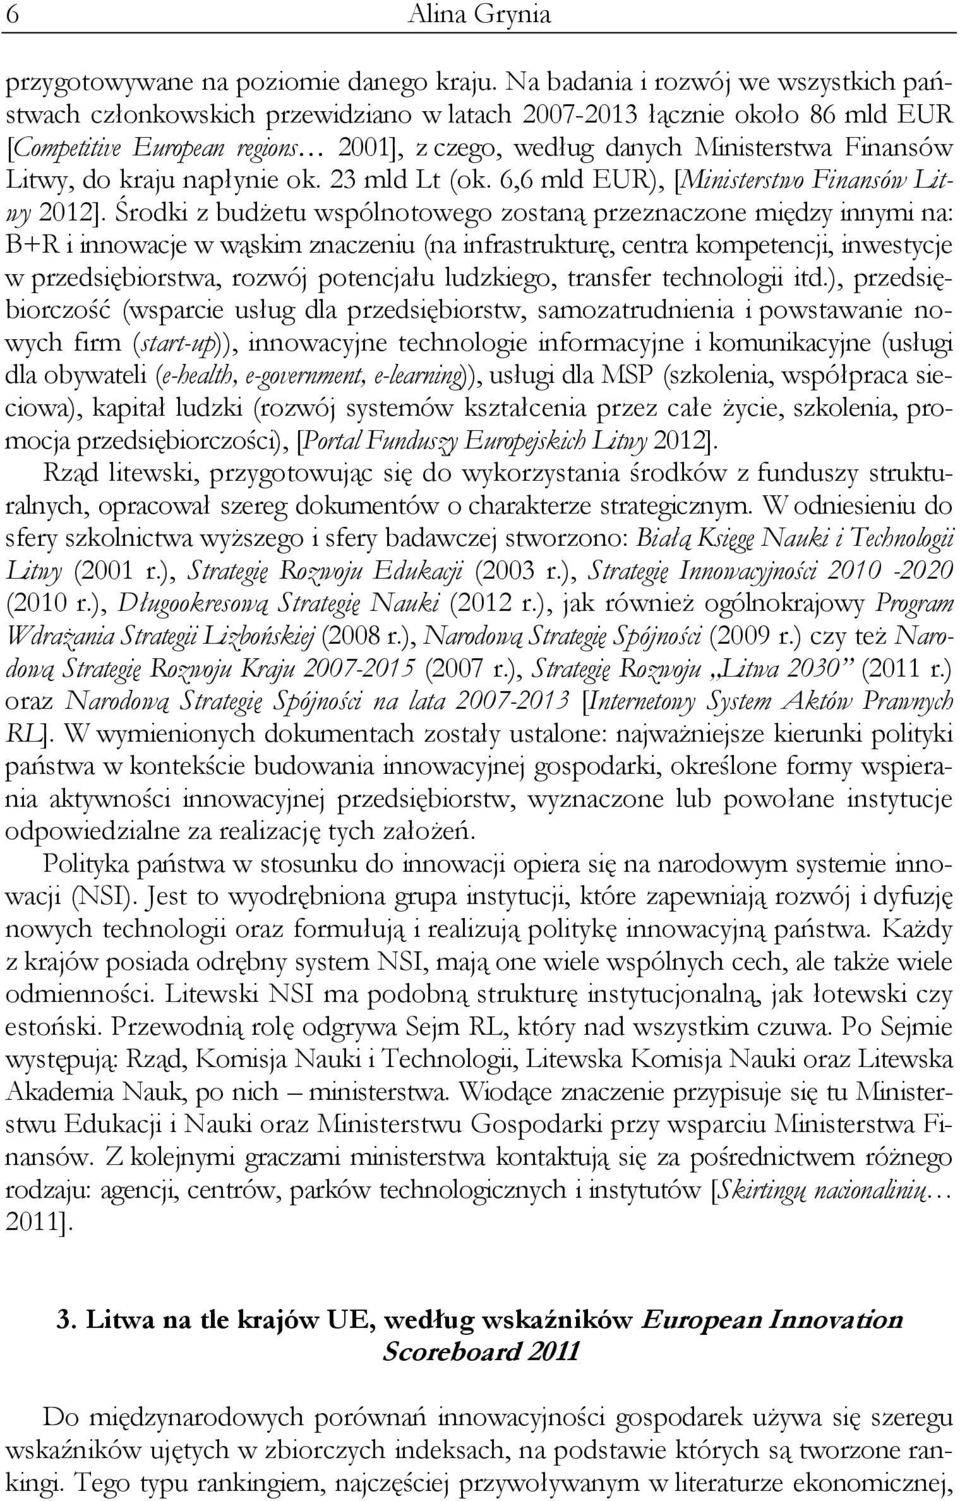 Litwy, do kraju napłynie ok. 23 mld Lt (ok. 6,6 mld EUR), [Ministerstwo Finansów Litwy 2012].